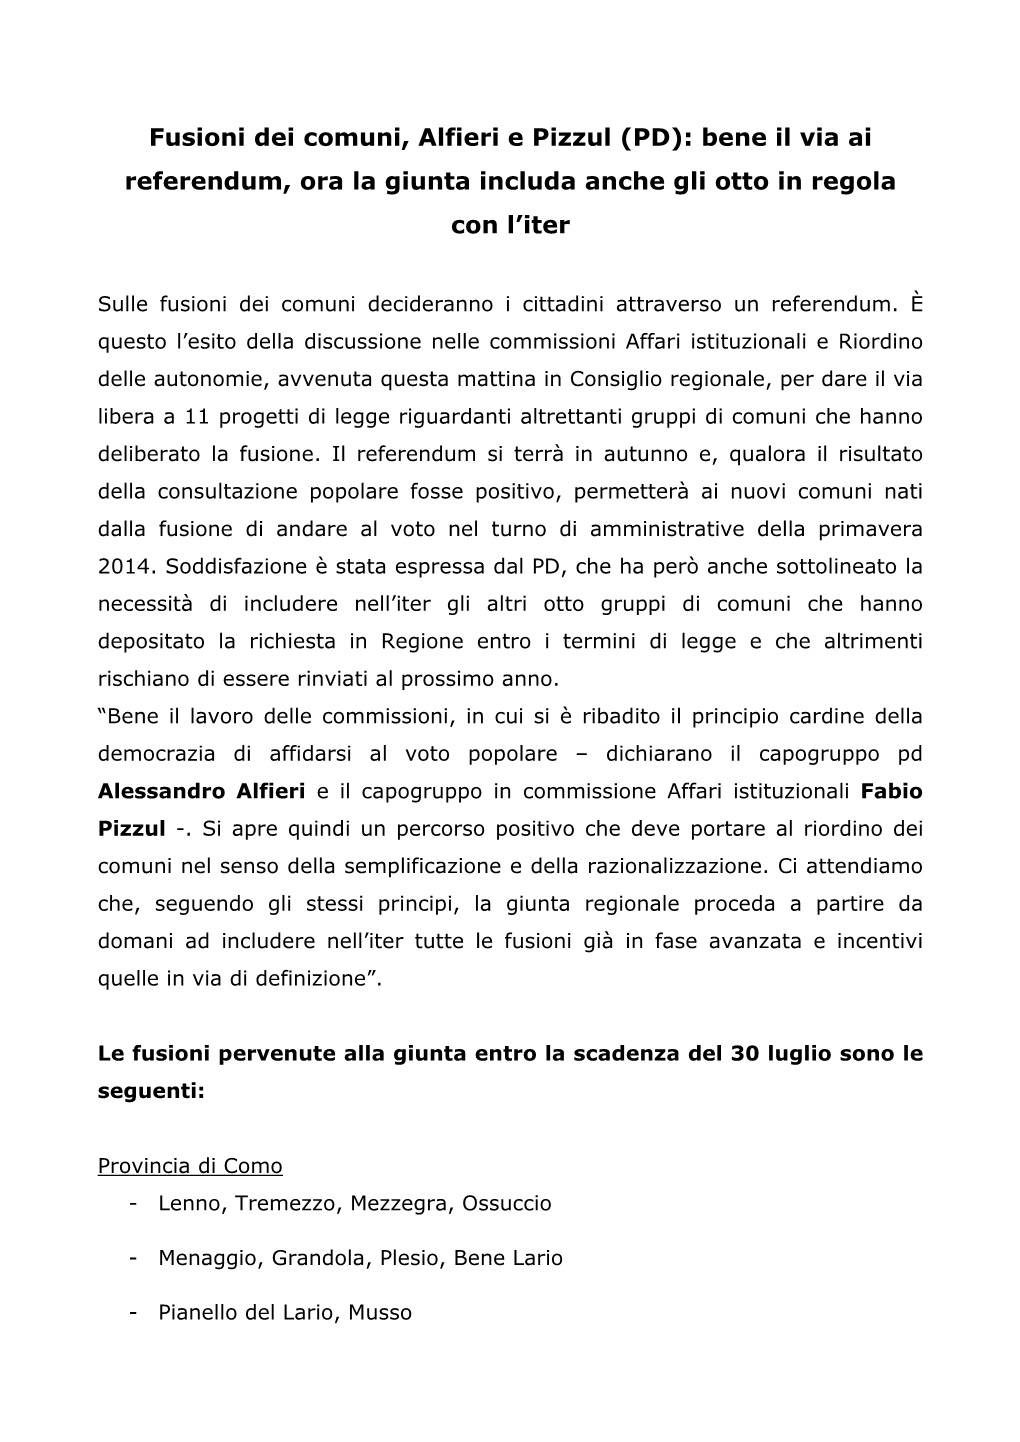 Fusioni Dei Comuni, Alfieri E Pizzul (PD): Bene Il Via Ai Referendum, Ora La Giunta Includa Anche Gli Otto in Regola Con L’Iter